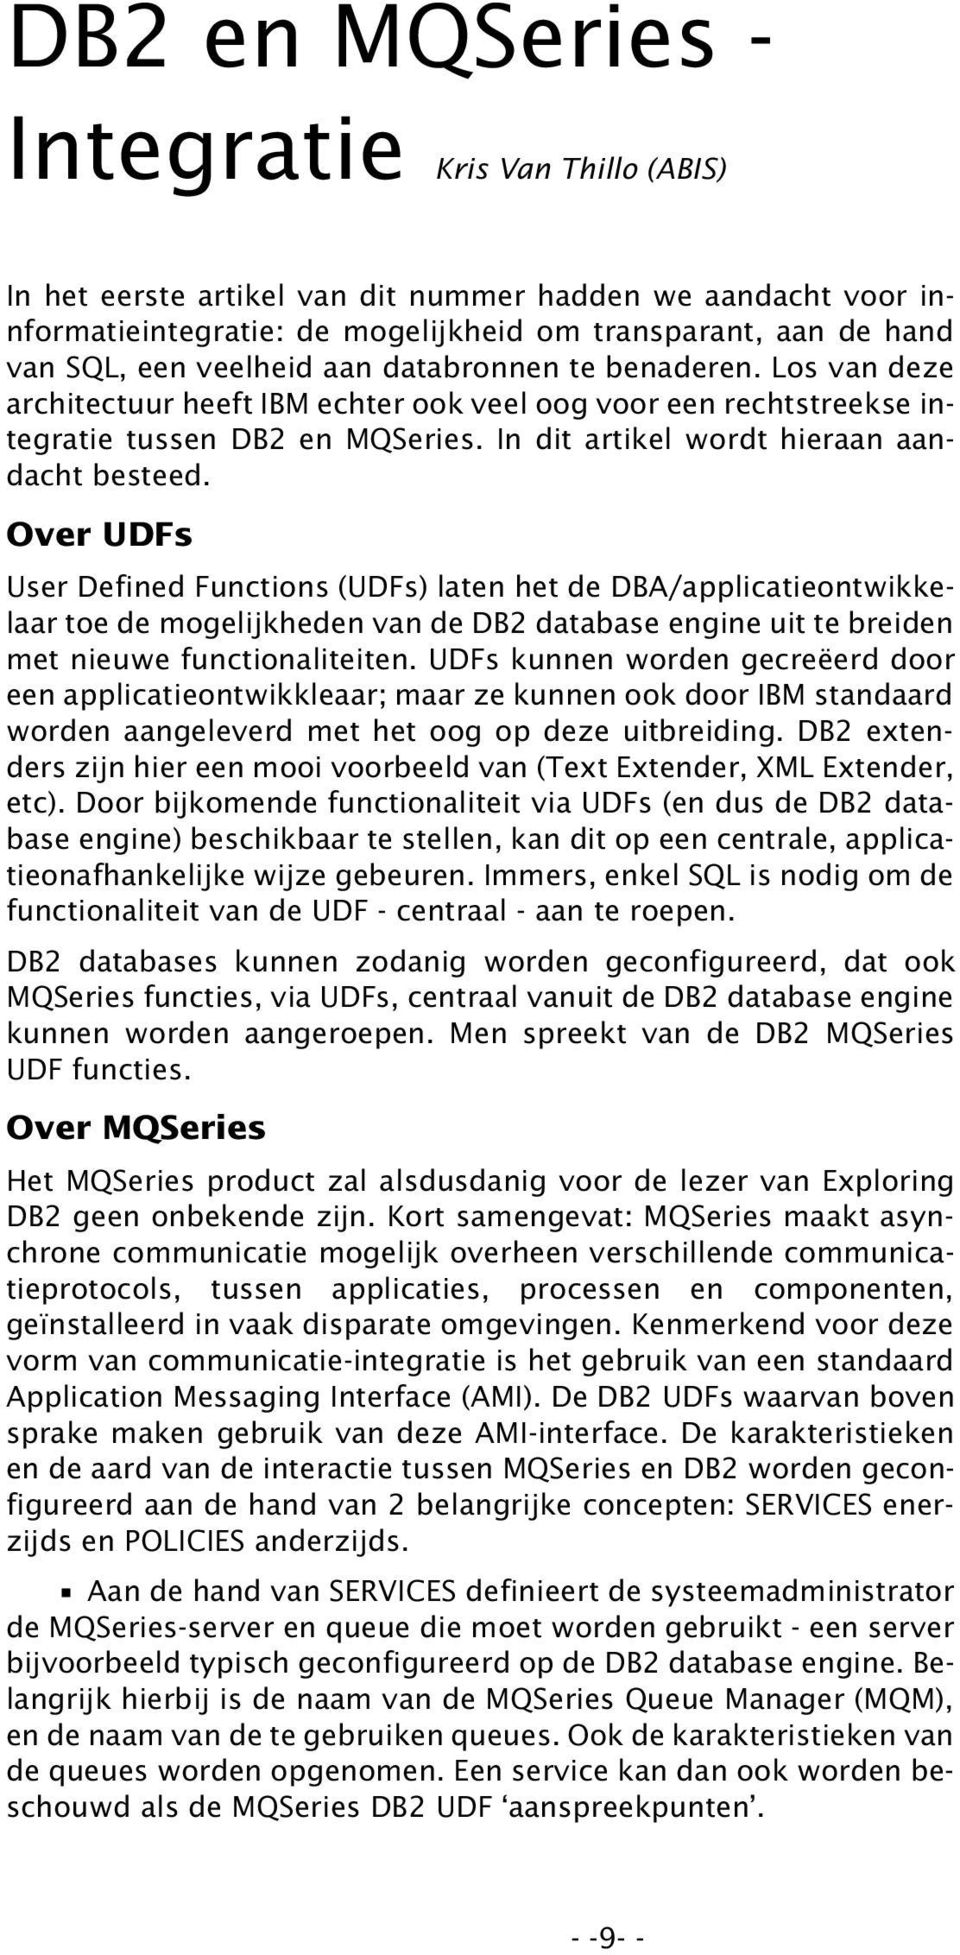 Over UDFs User Defined Functions (UDFs) laten het de DBA/applicatieontwikkelaar toe de mogelijkheden van de DB2 database engine uit te breiden met nieuwe functionaliteiten.